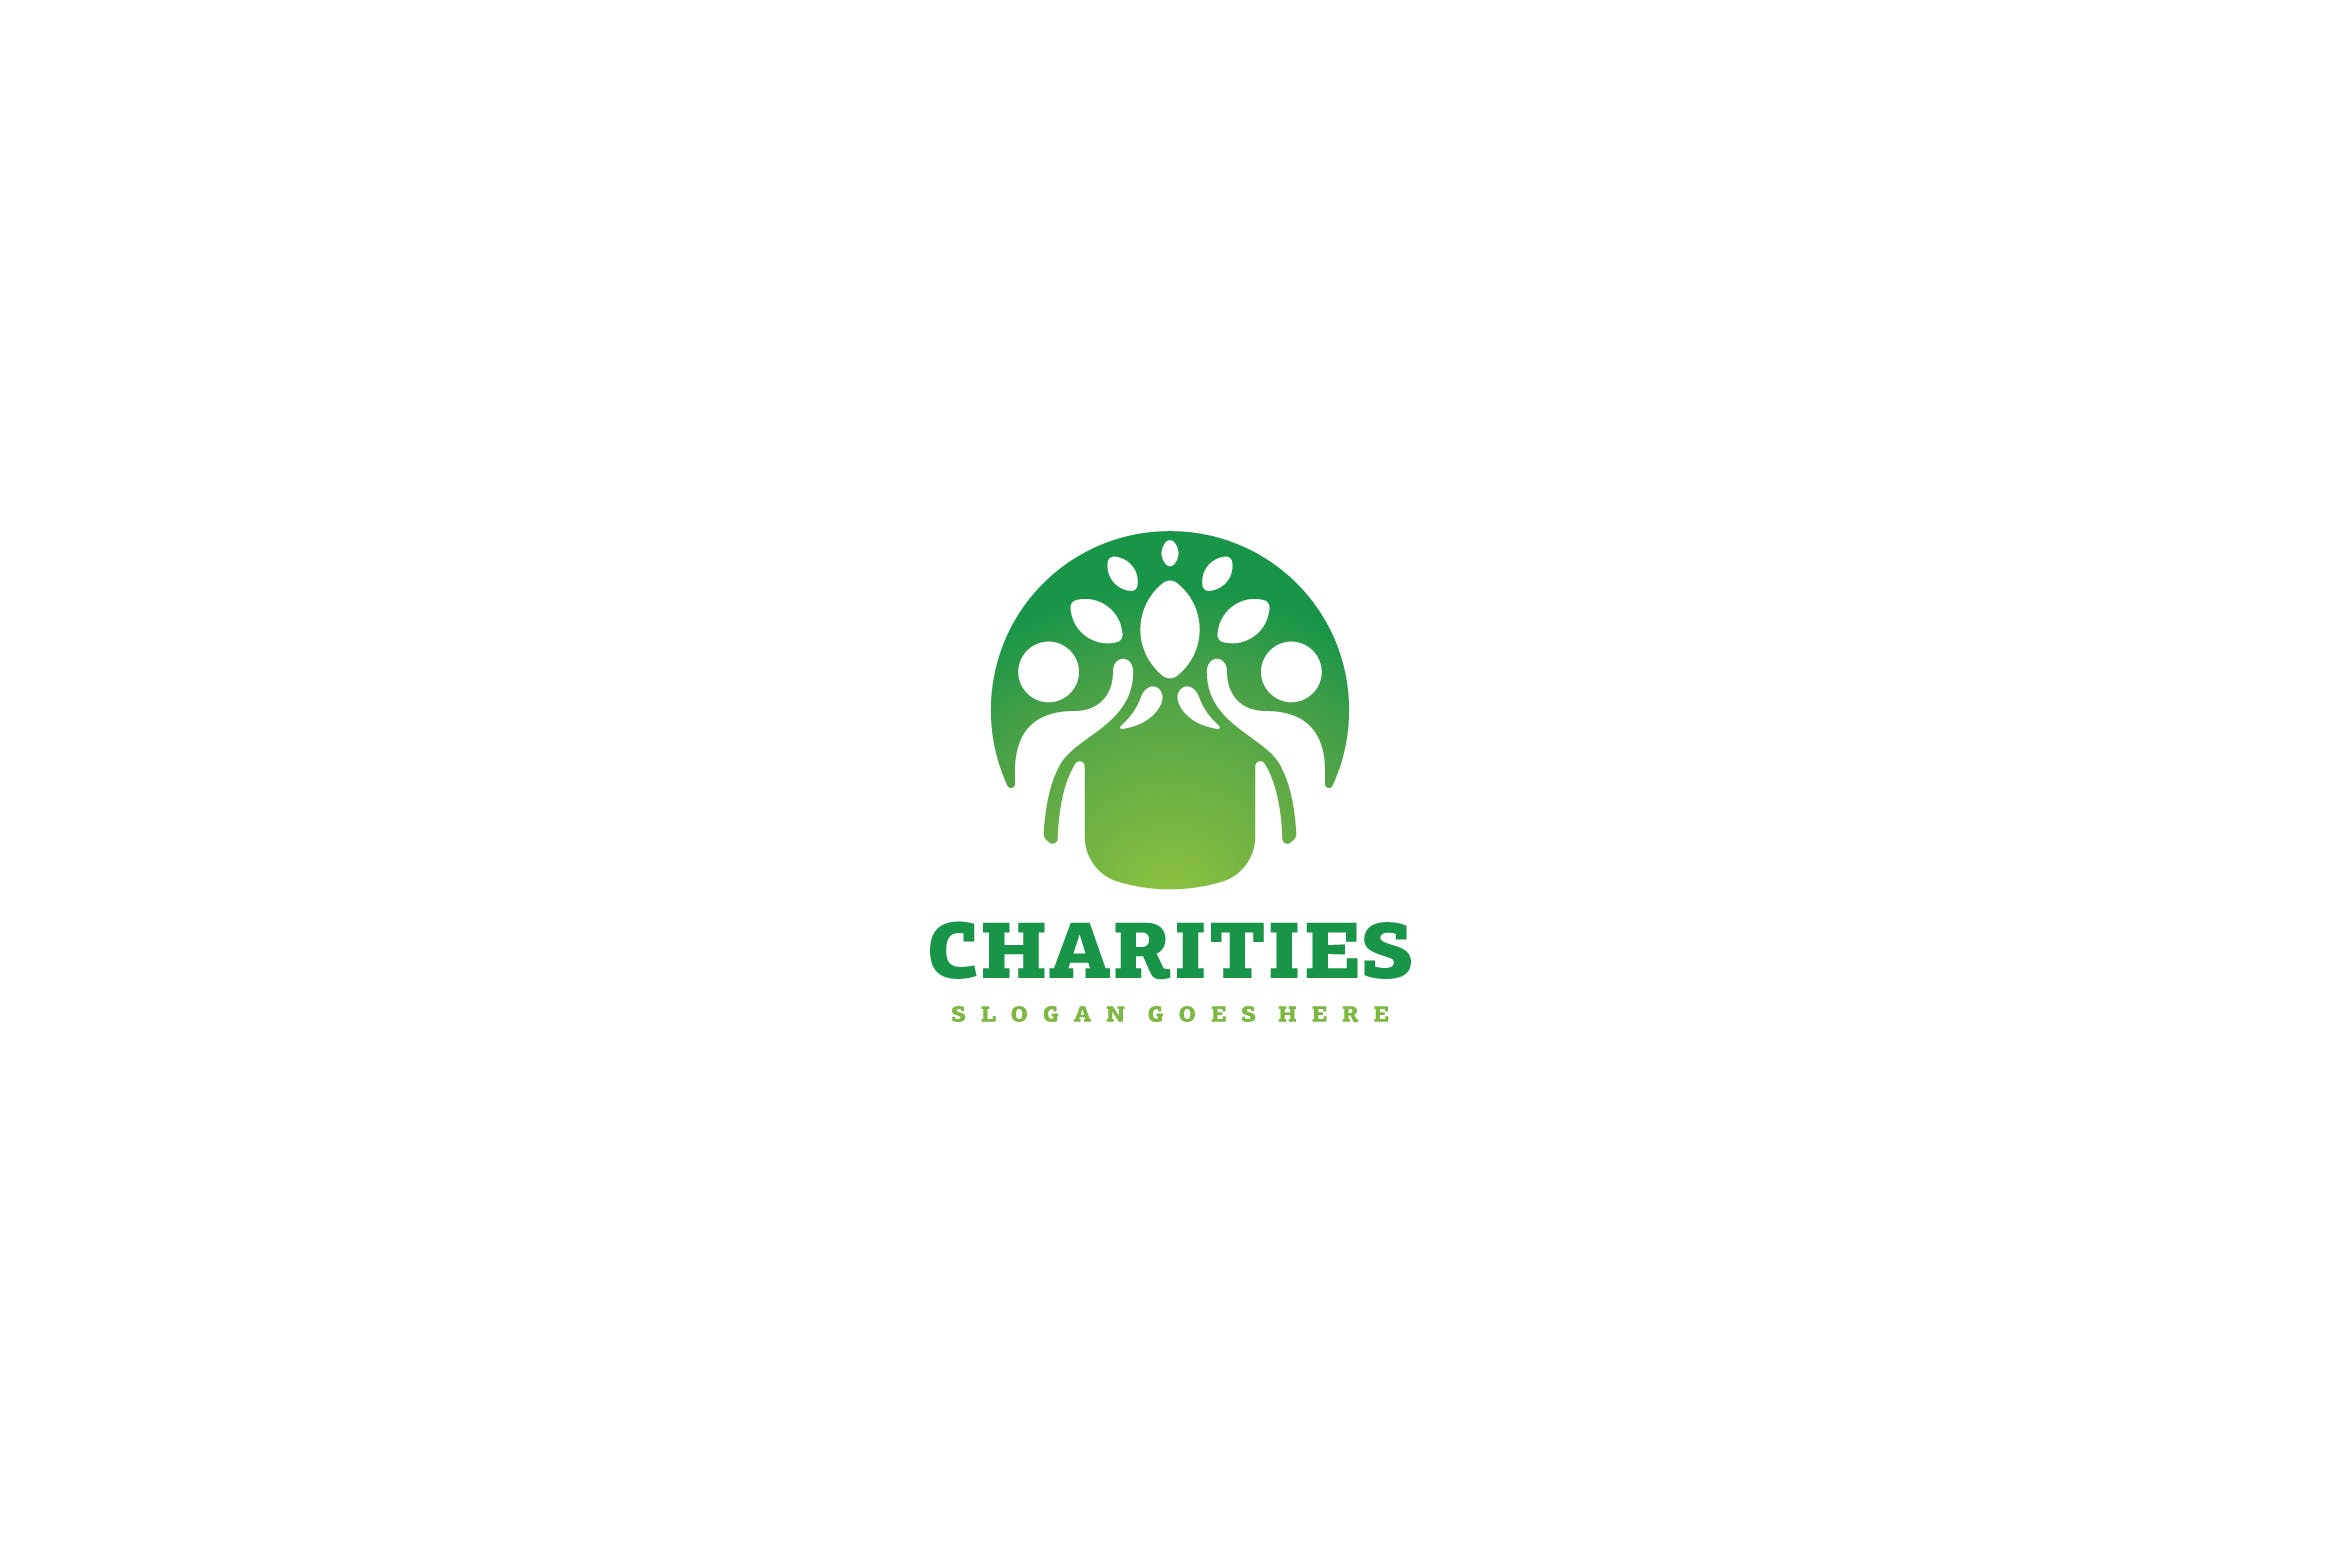 生态慈善行业Logo设计16图库精选模板 Eco Charities Logo插图